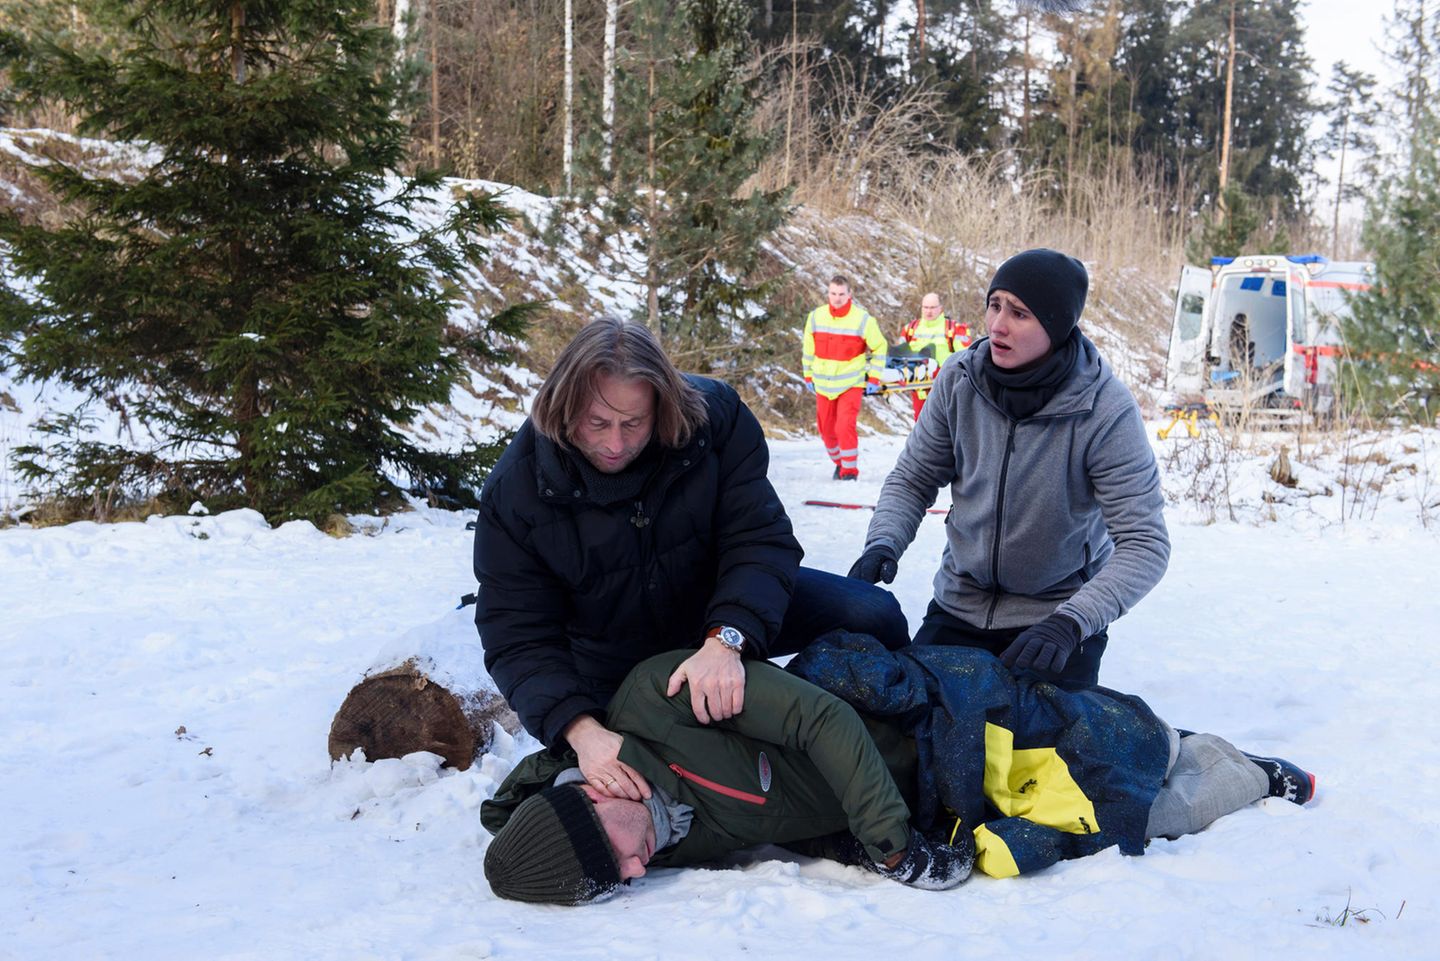 Fabien (Lukas Schmidt, r.) hofft innständig, dass Michael (Erich Altenkopf, l.) Nils (Florian Stadler, liegend) retten kann